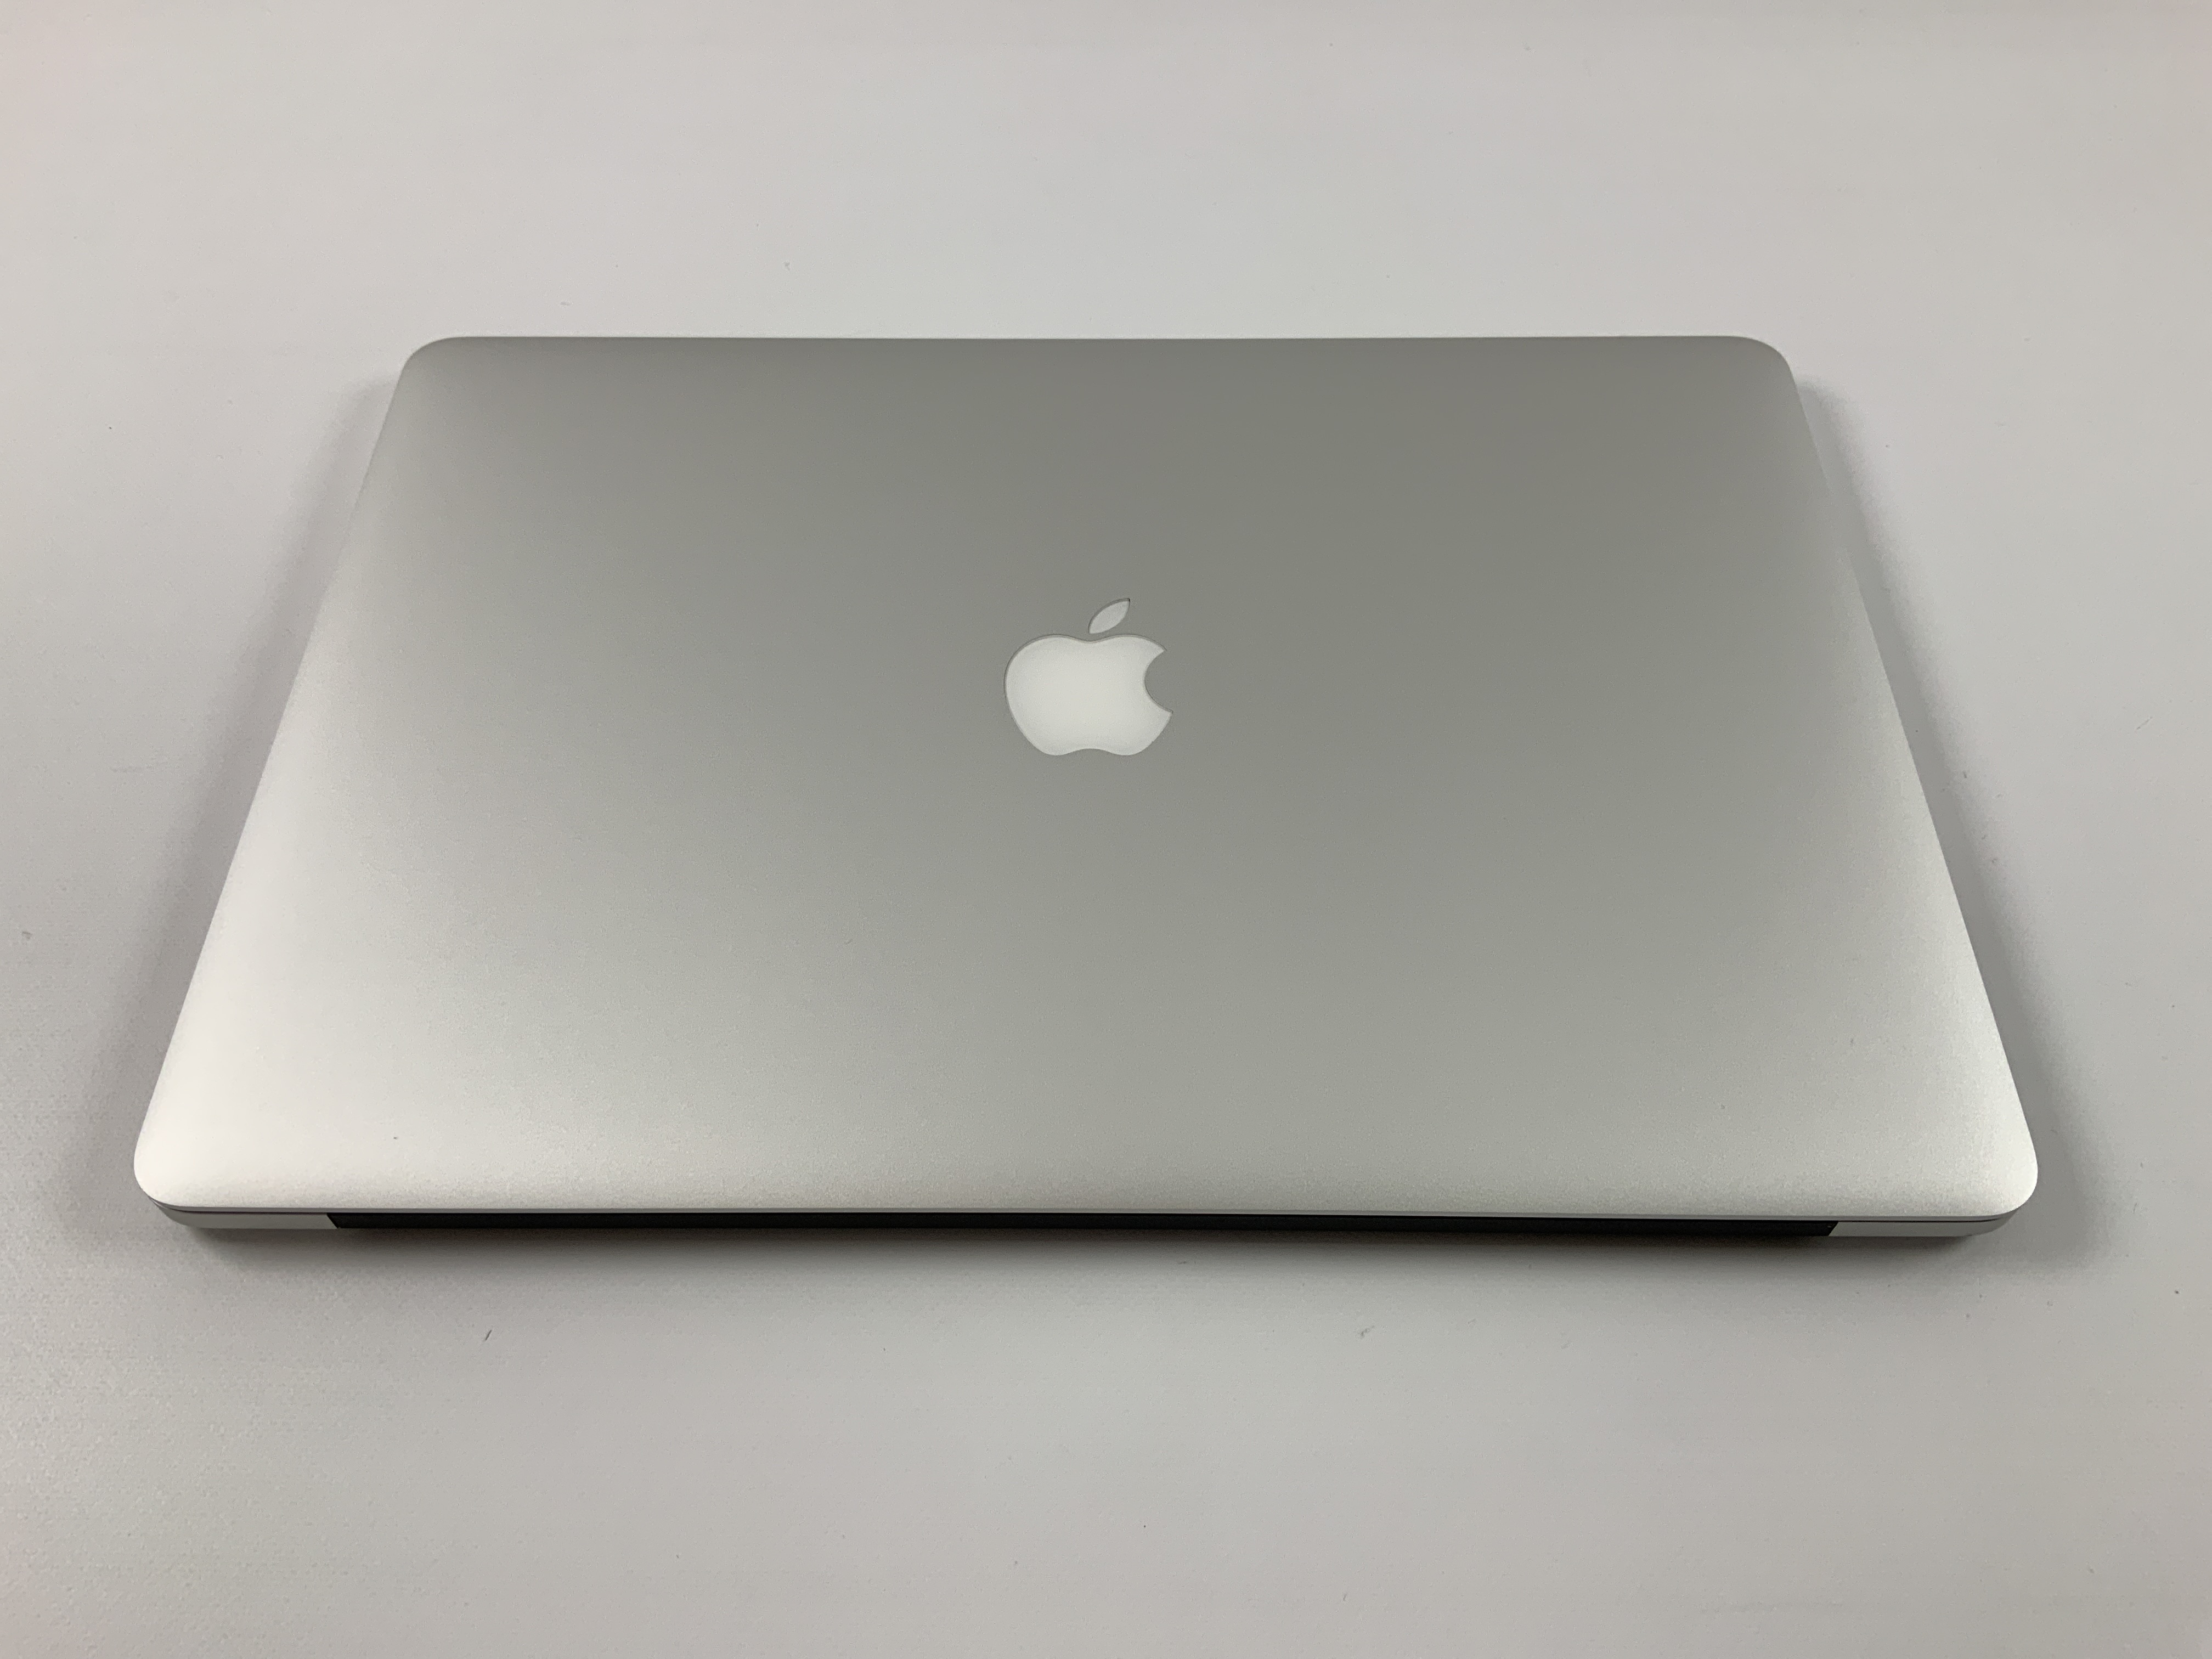 MacBook Pro Retina 15" Mid 2015 (Intel Quad-Core i7 2.2 GHz 16 GB RAM 256 GB SSD), Intel Quad-Core i7 2.2 GHz, 16 GB RAM, 256 GB SSD, bild 2